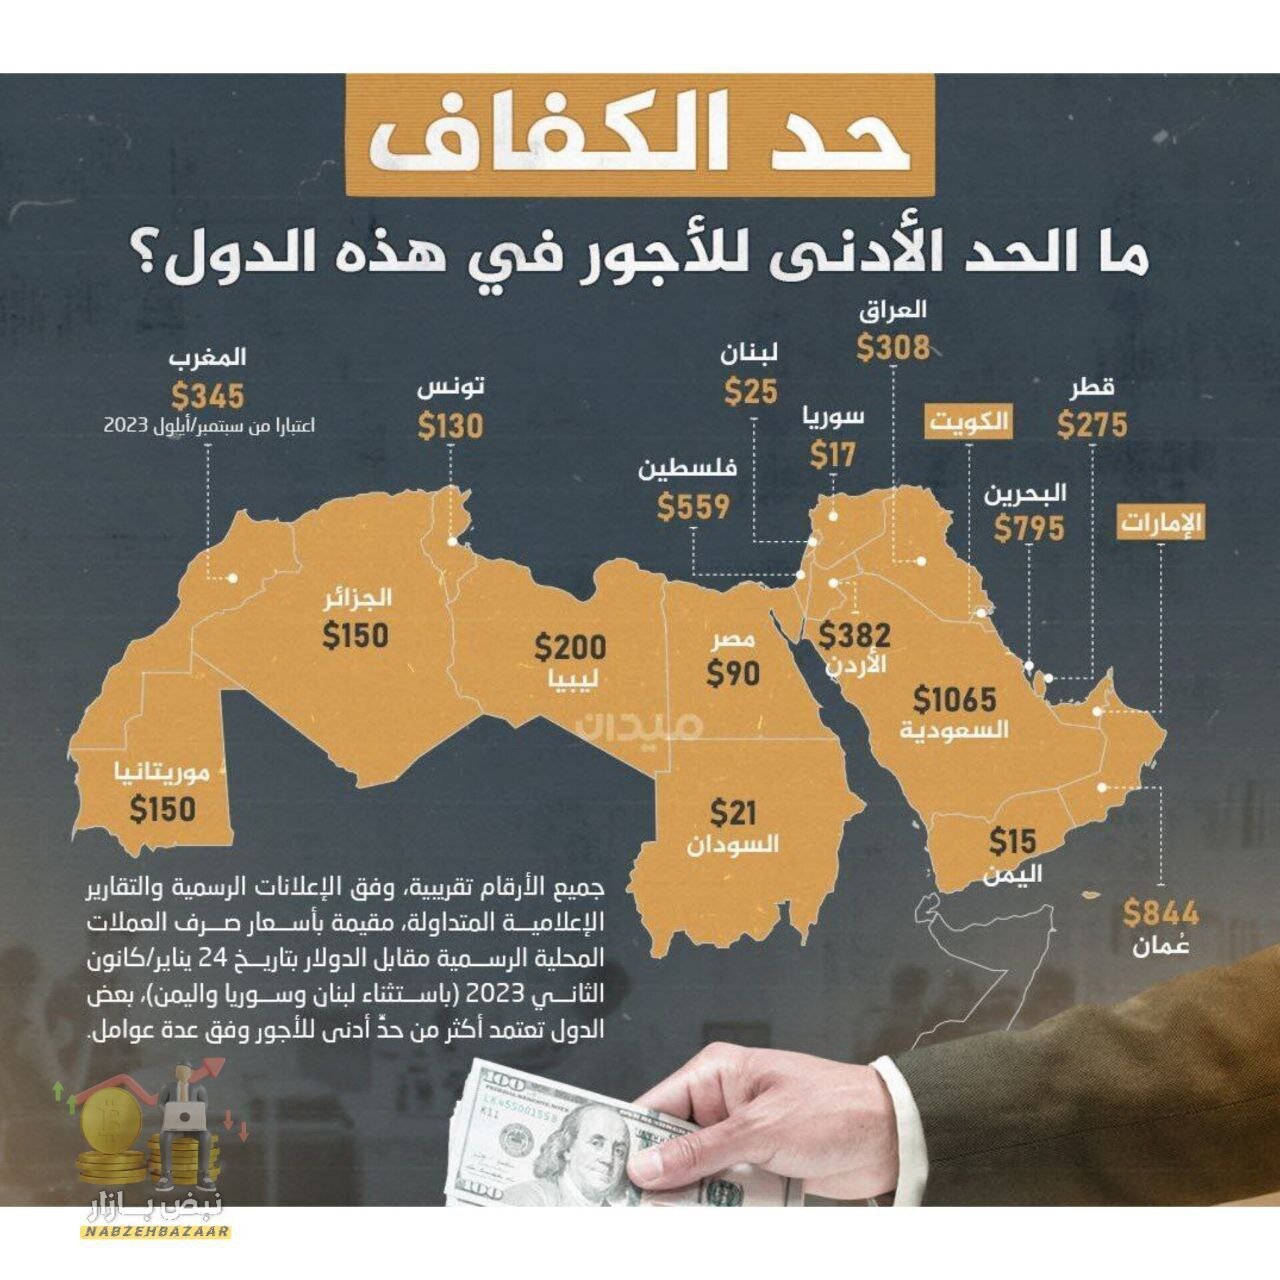 حداقل دستمزد در هر یک از کشورهای جهان عرب چند دلار است؟ ( اینفوگرافی)